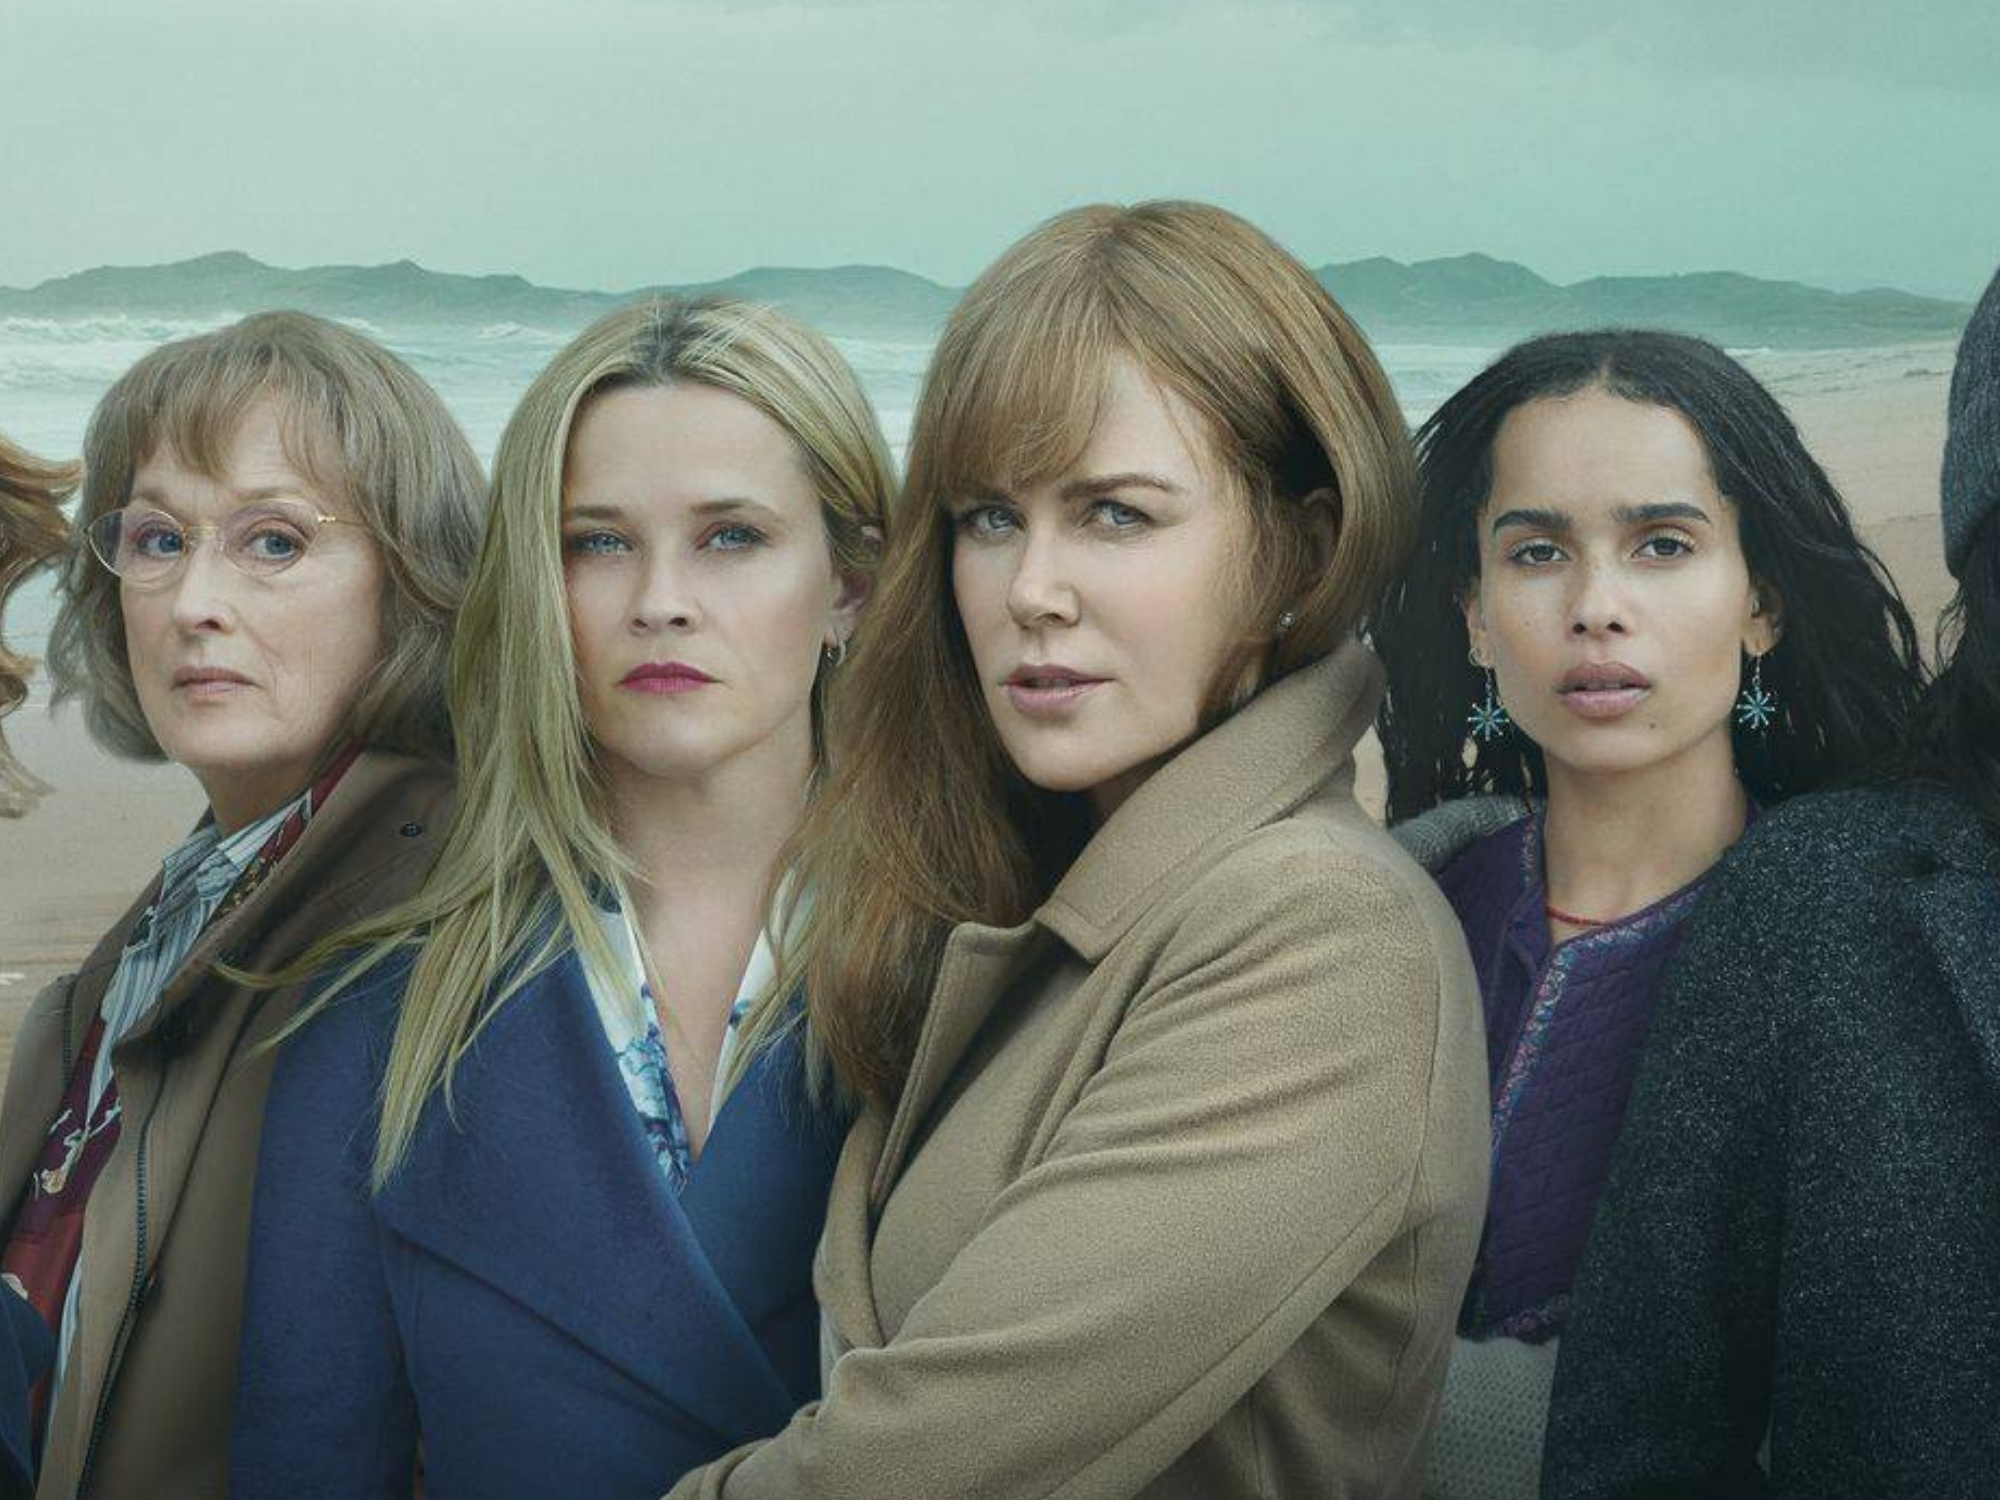 Da esq. para à dir. Meryl Streep, Reese Witherspoon, Nicole Kidman e Zoe Kravitz em foto promocional de Big Little Lies, série da HBO